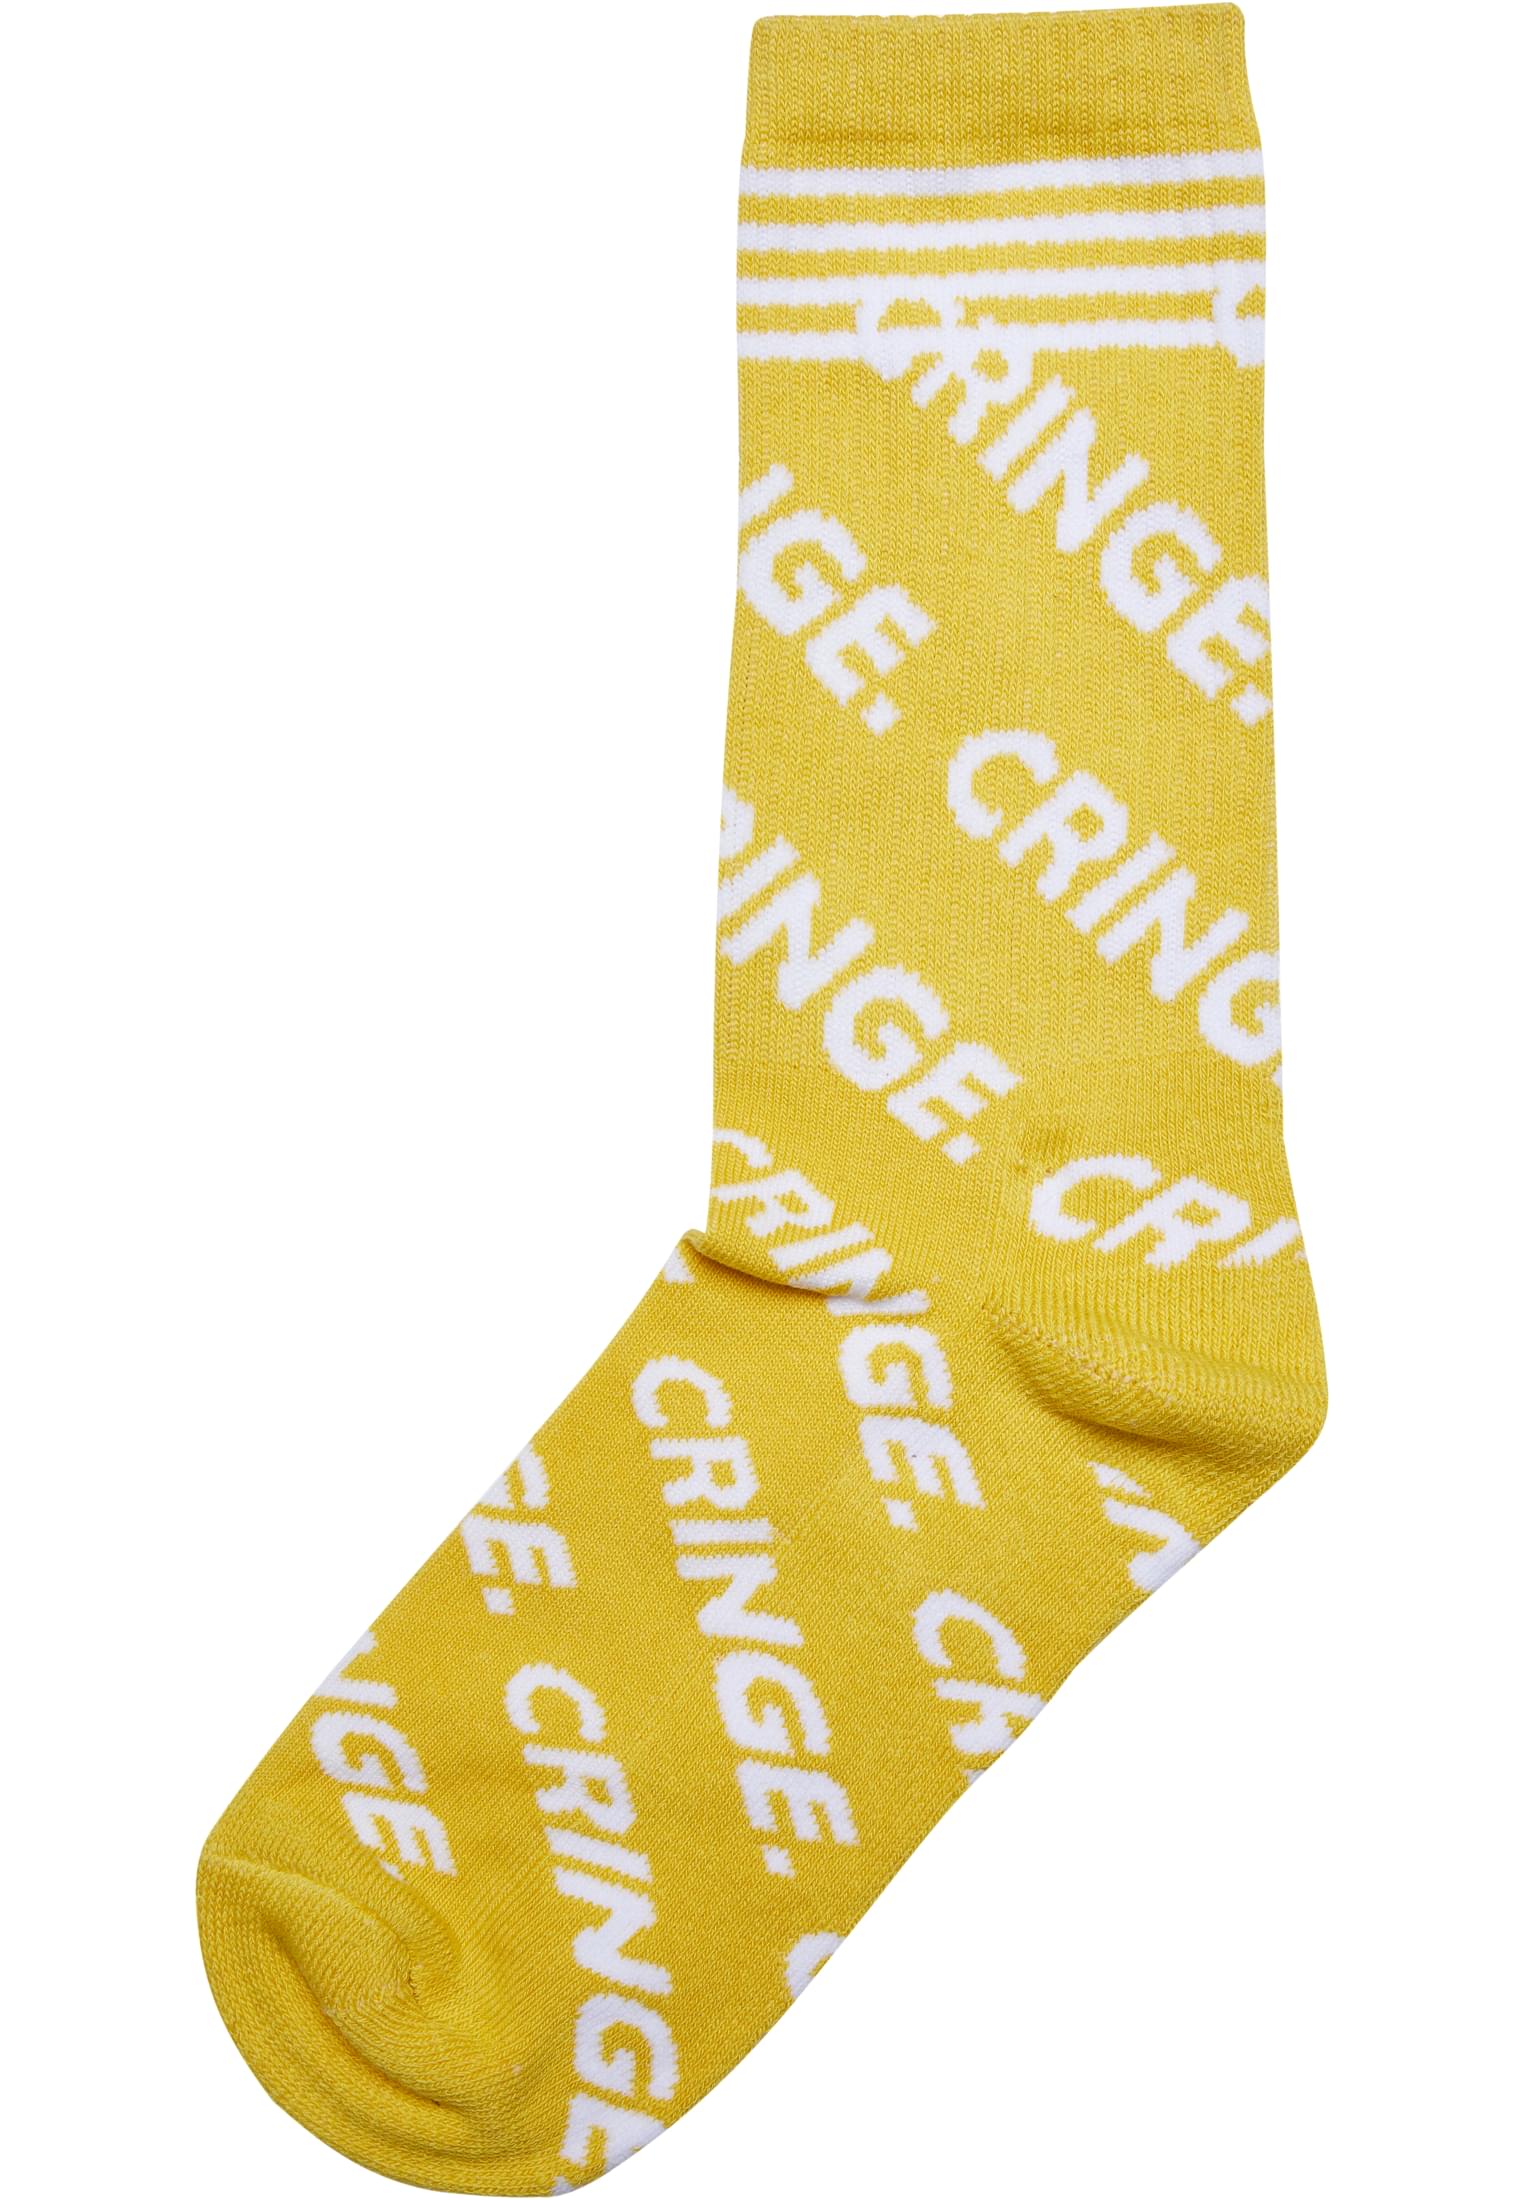 Cringe Socks 3-Pack-MT2318